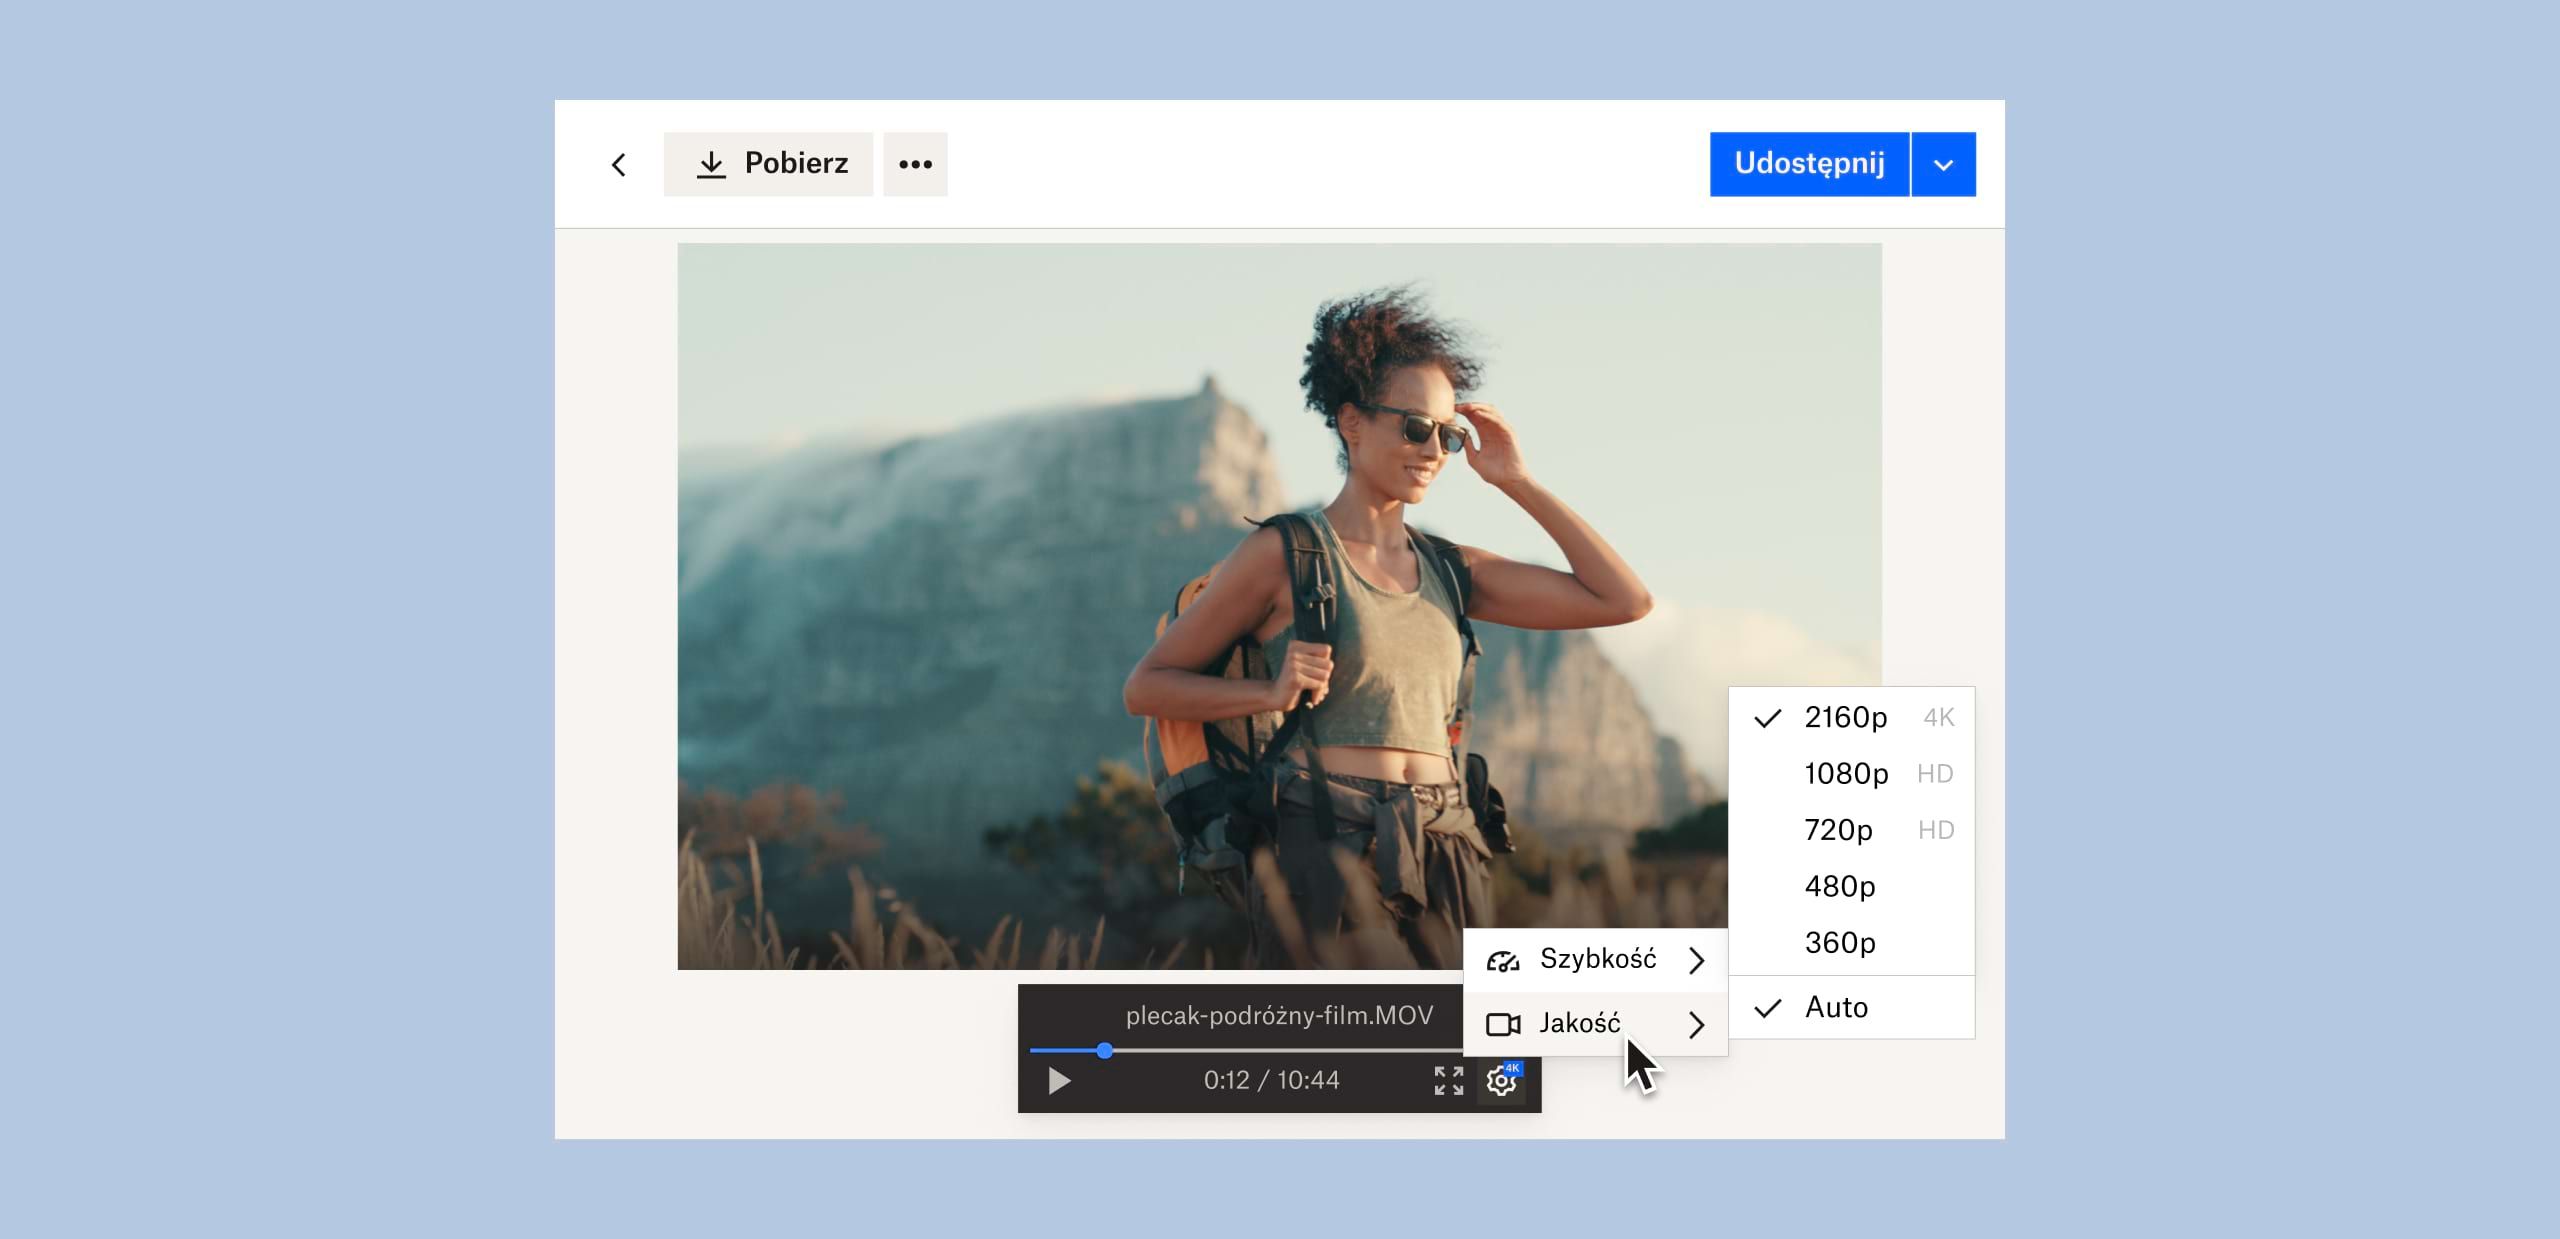 Użytkownik zmieniający jakość obrazu w pliku wideo zapisanym w Dropbox